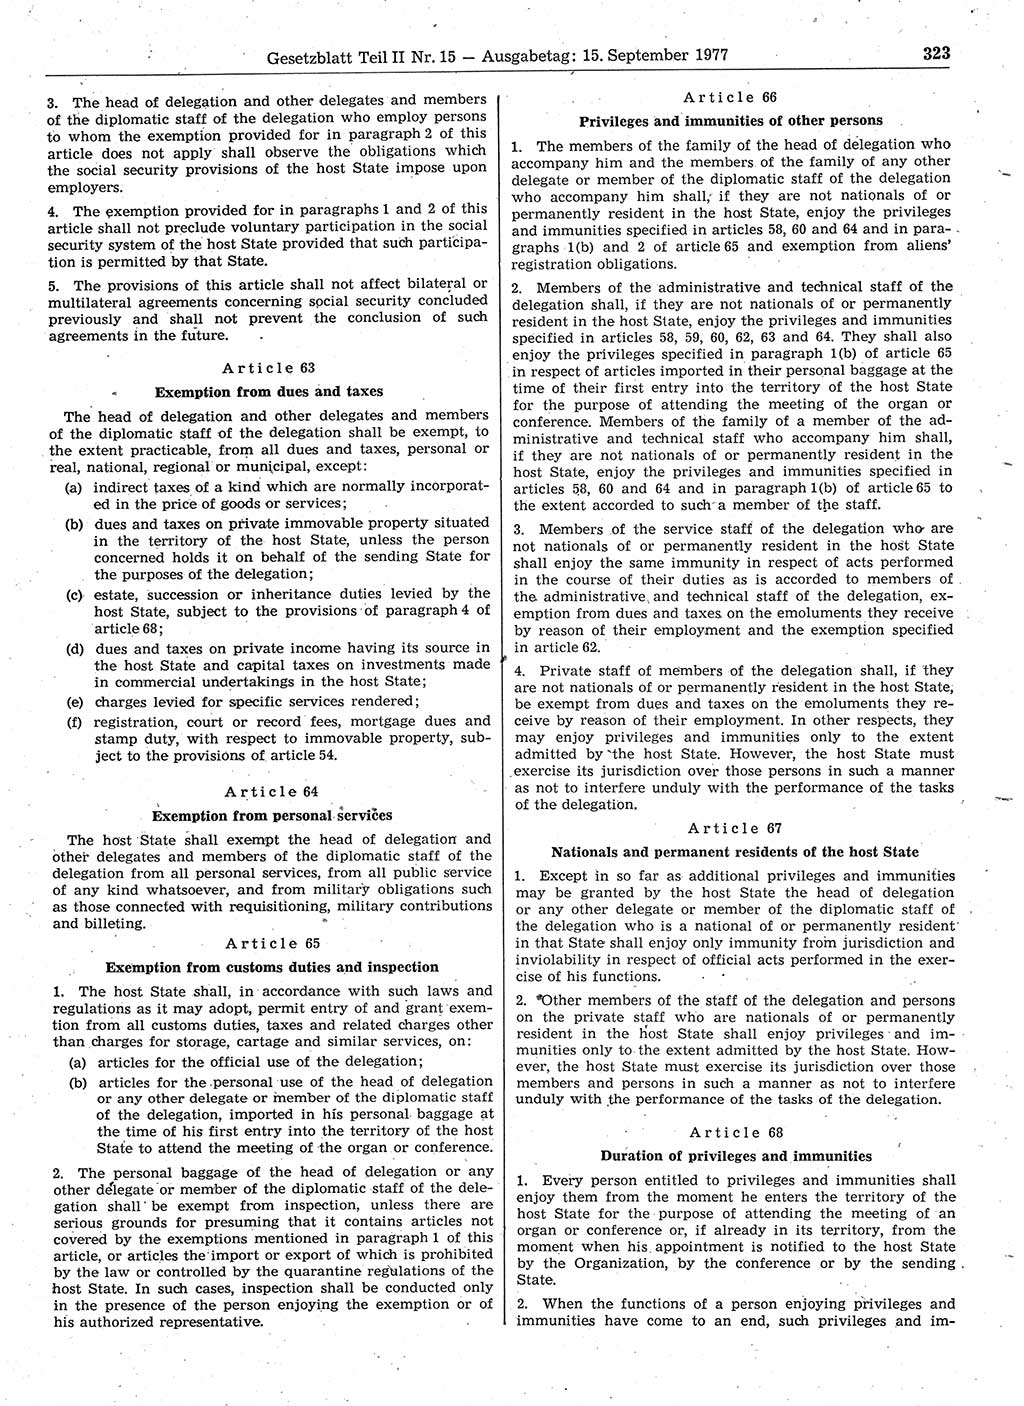 Gesetzblatt (GBl.) der Deutschen Demokratischen Republik (DDR) Teil ⅠⅠ 1977, Seite 323 (GBl. DDR ⅠⅠ 1977, S. 323)